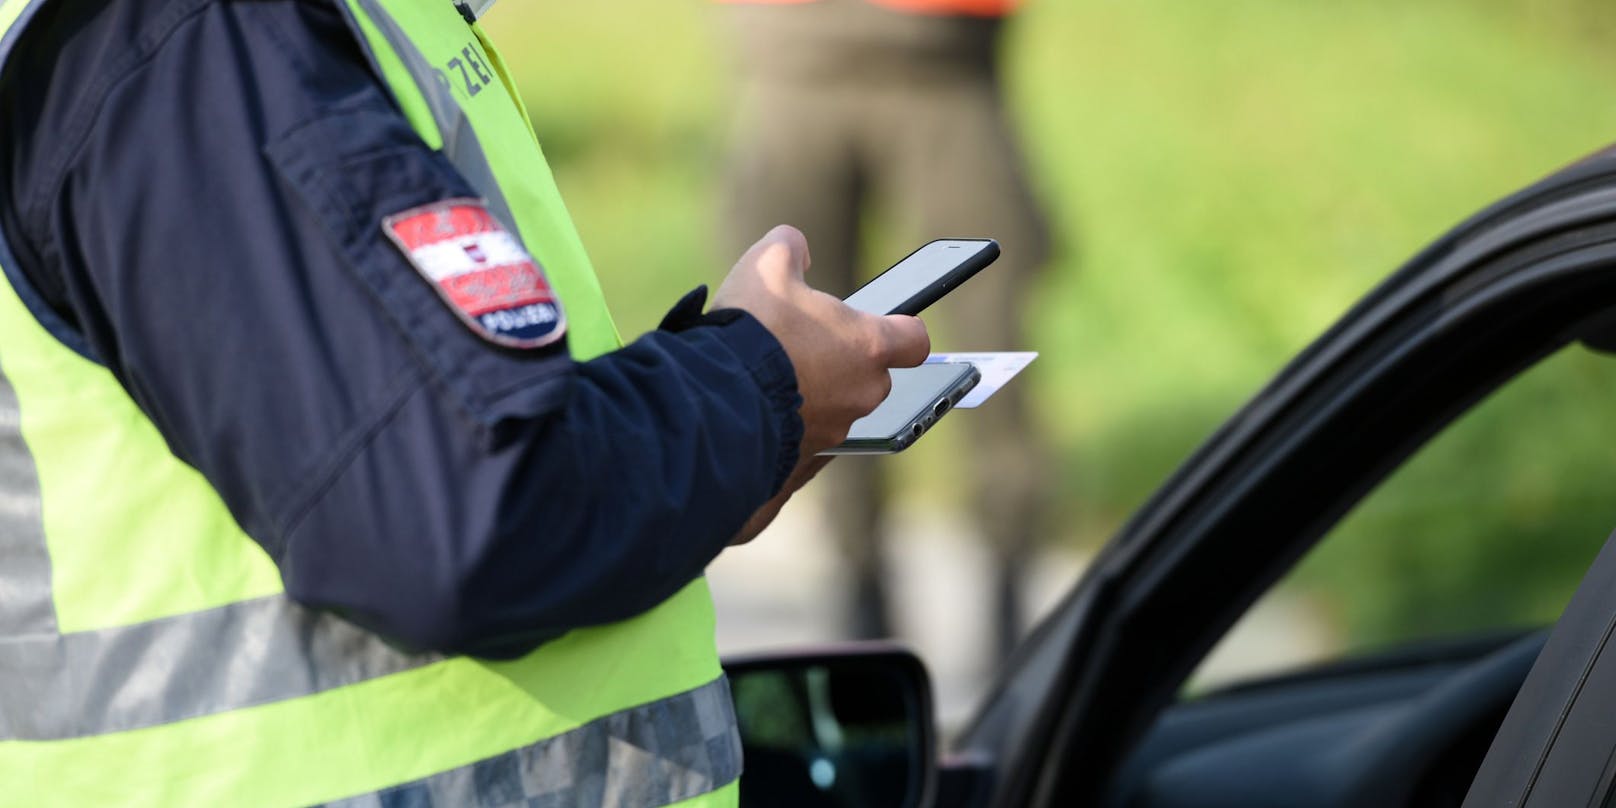 Am Freitag wurden im Burgenland tausende Autolenker von der Polizei kontrolliert. (Symbolbild)